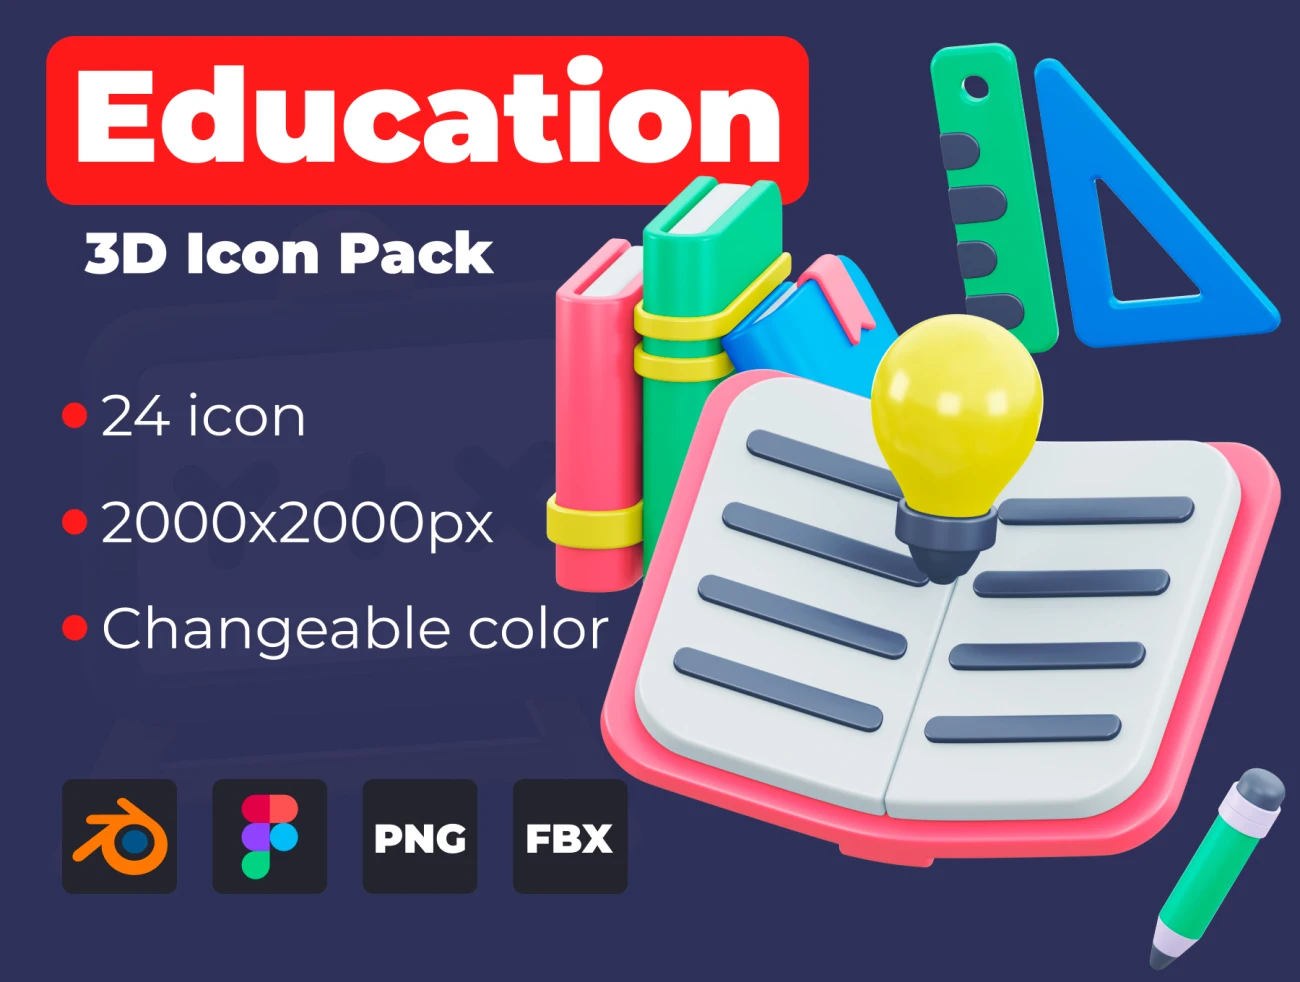 24款教育3D图标素材下载 Education 3D icon pack .blender .figma插图1